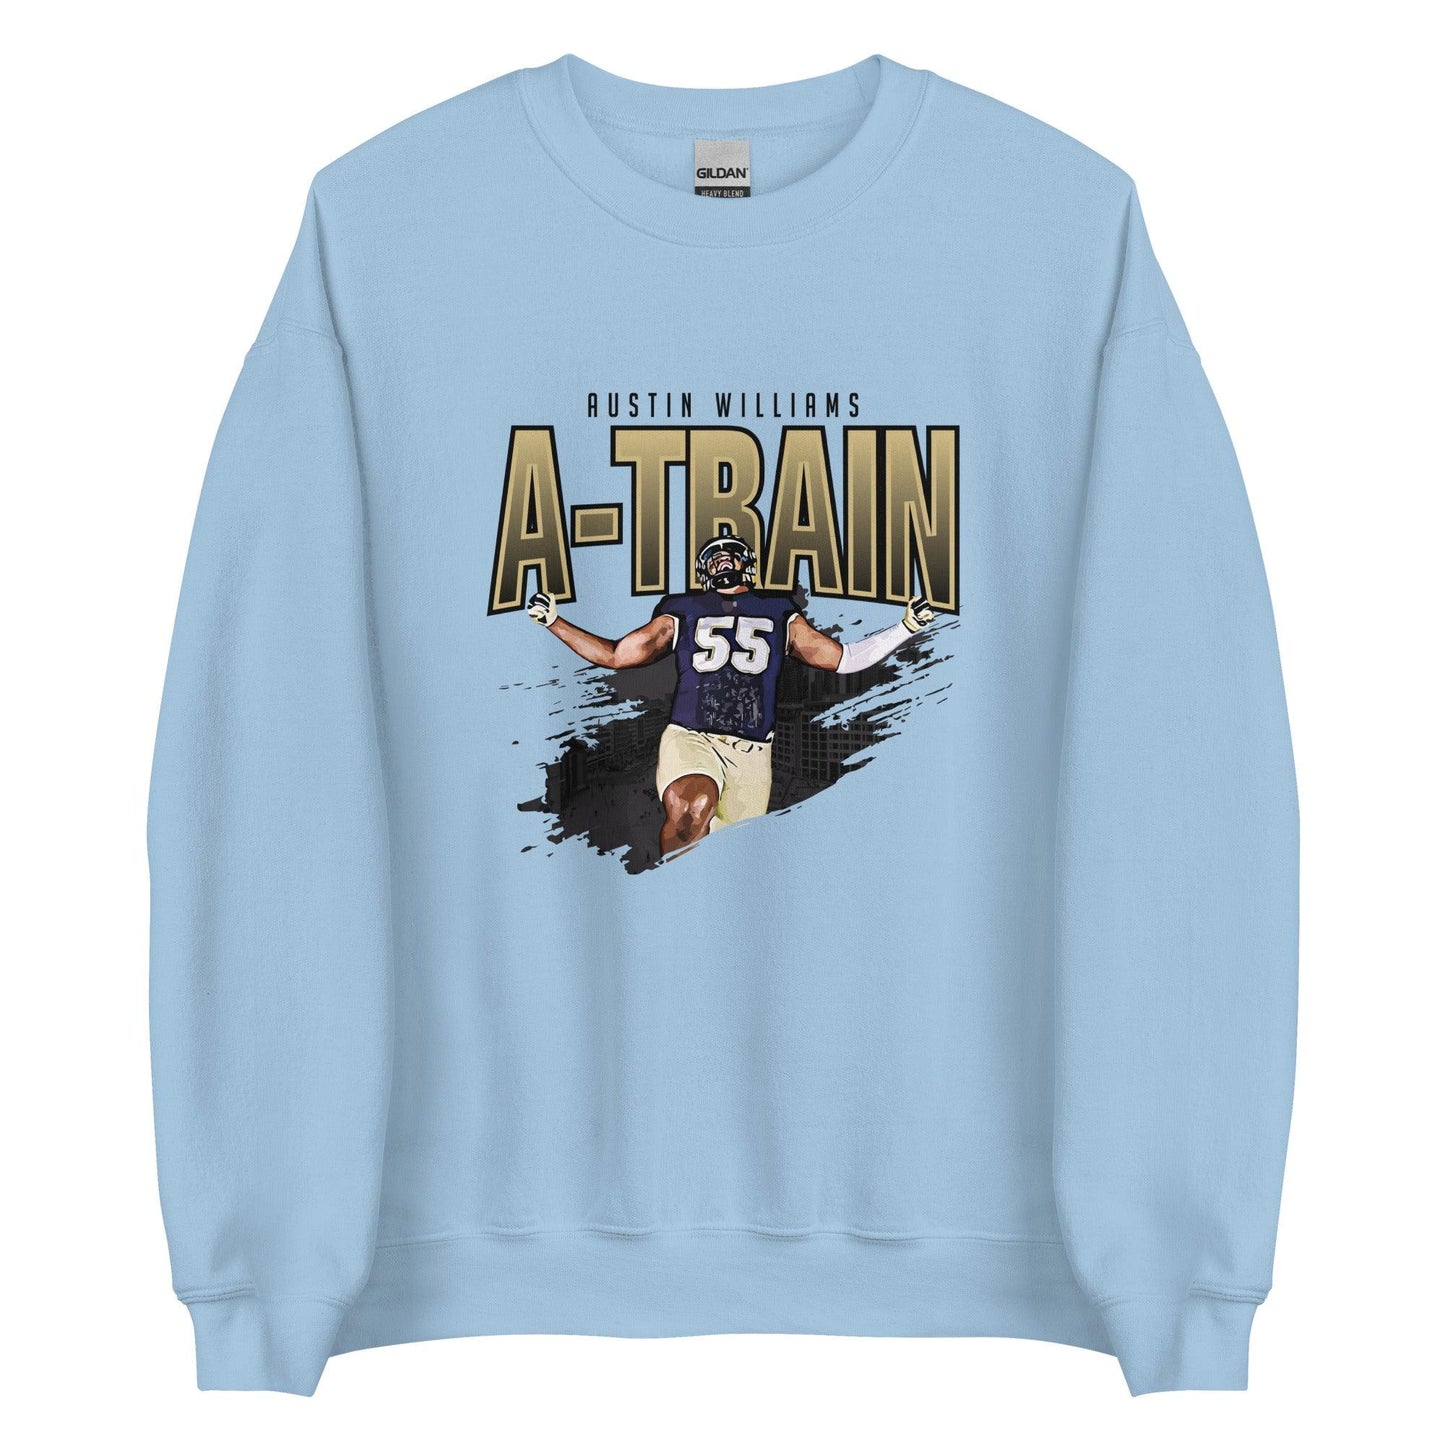 Austin Williams "Celebrate" Sweatshirt - Fan Arch